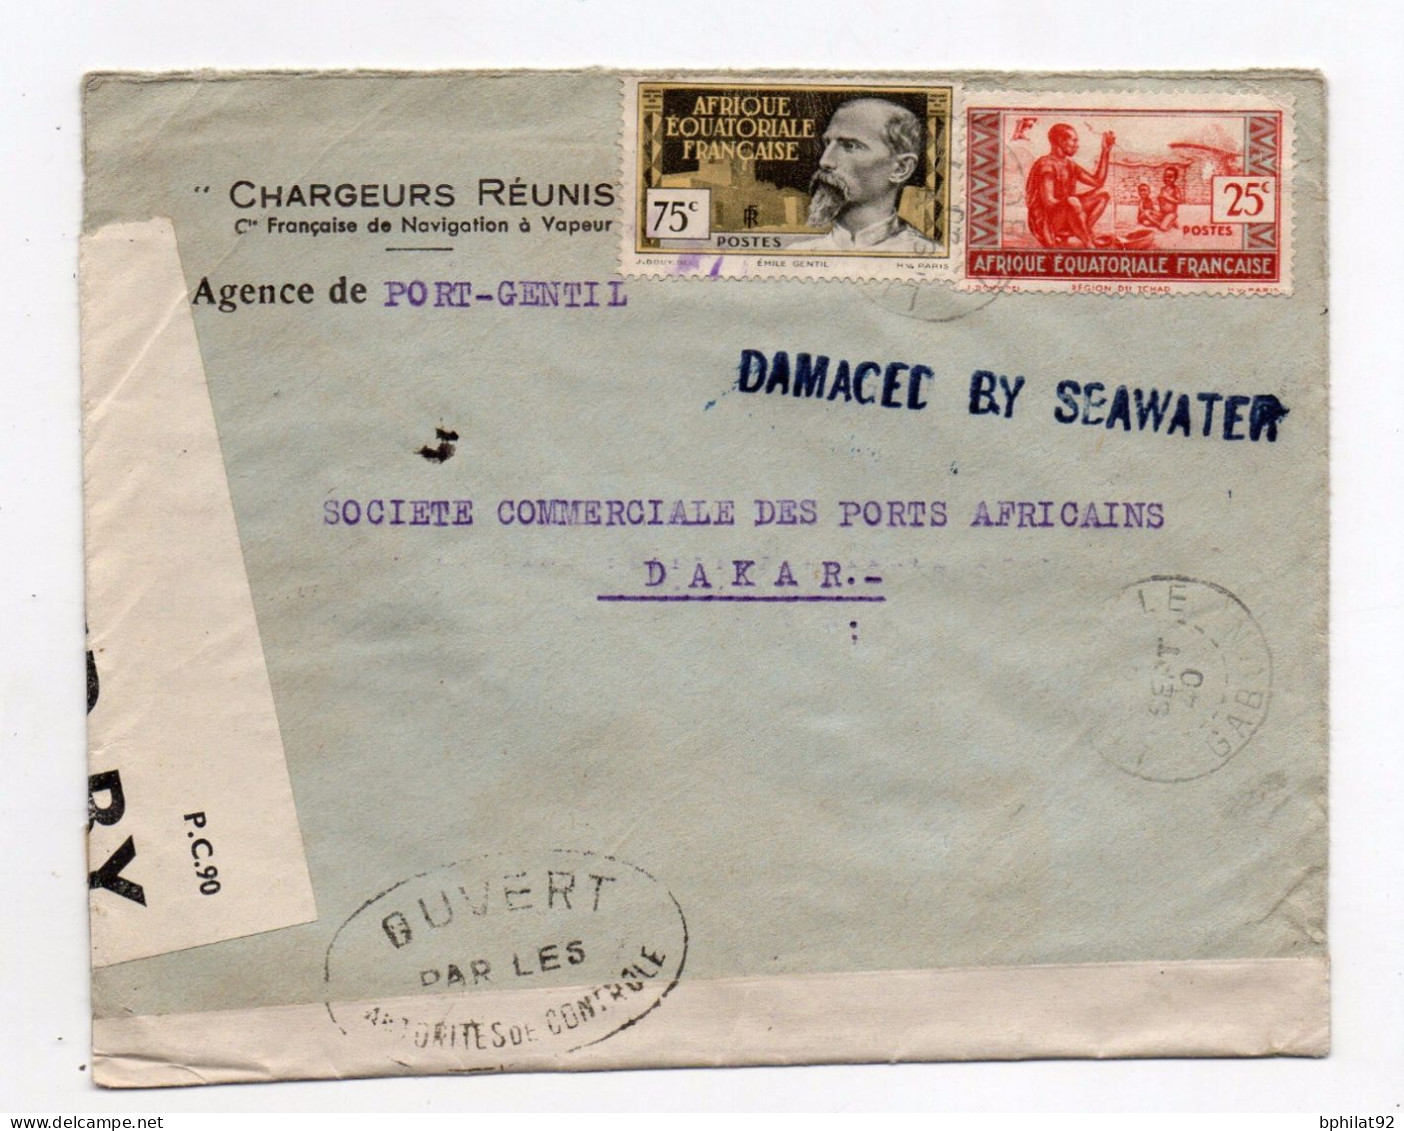 !!! LETTRE DE PORT GENTIL DE SEPTEMBRE 1940 POUR DAKAR, MARQUE LINEAIRE BLEUE "DAMAGED BY SEAWATER" - Unfallpost